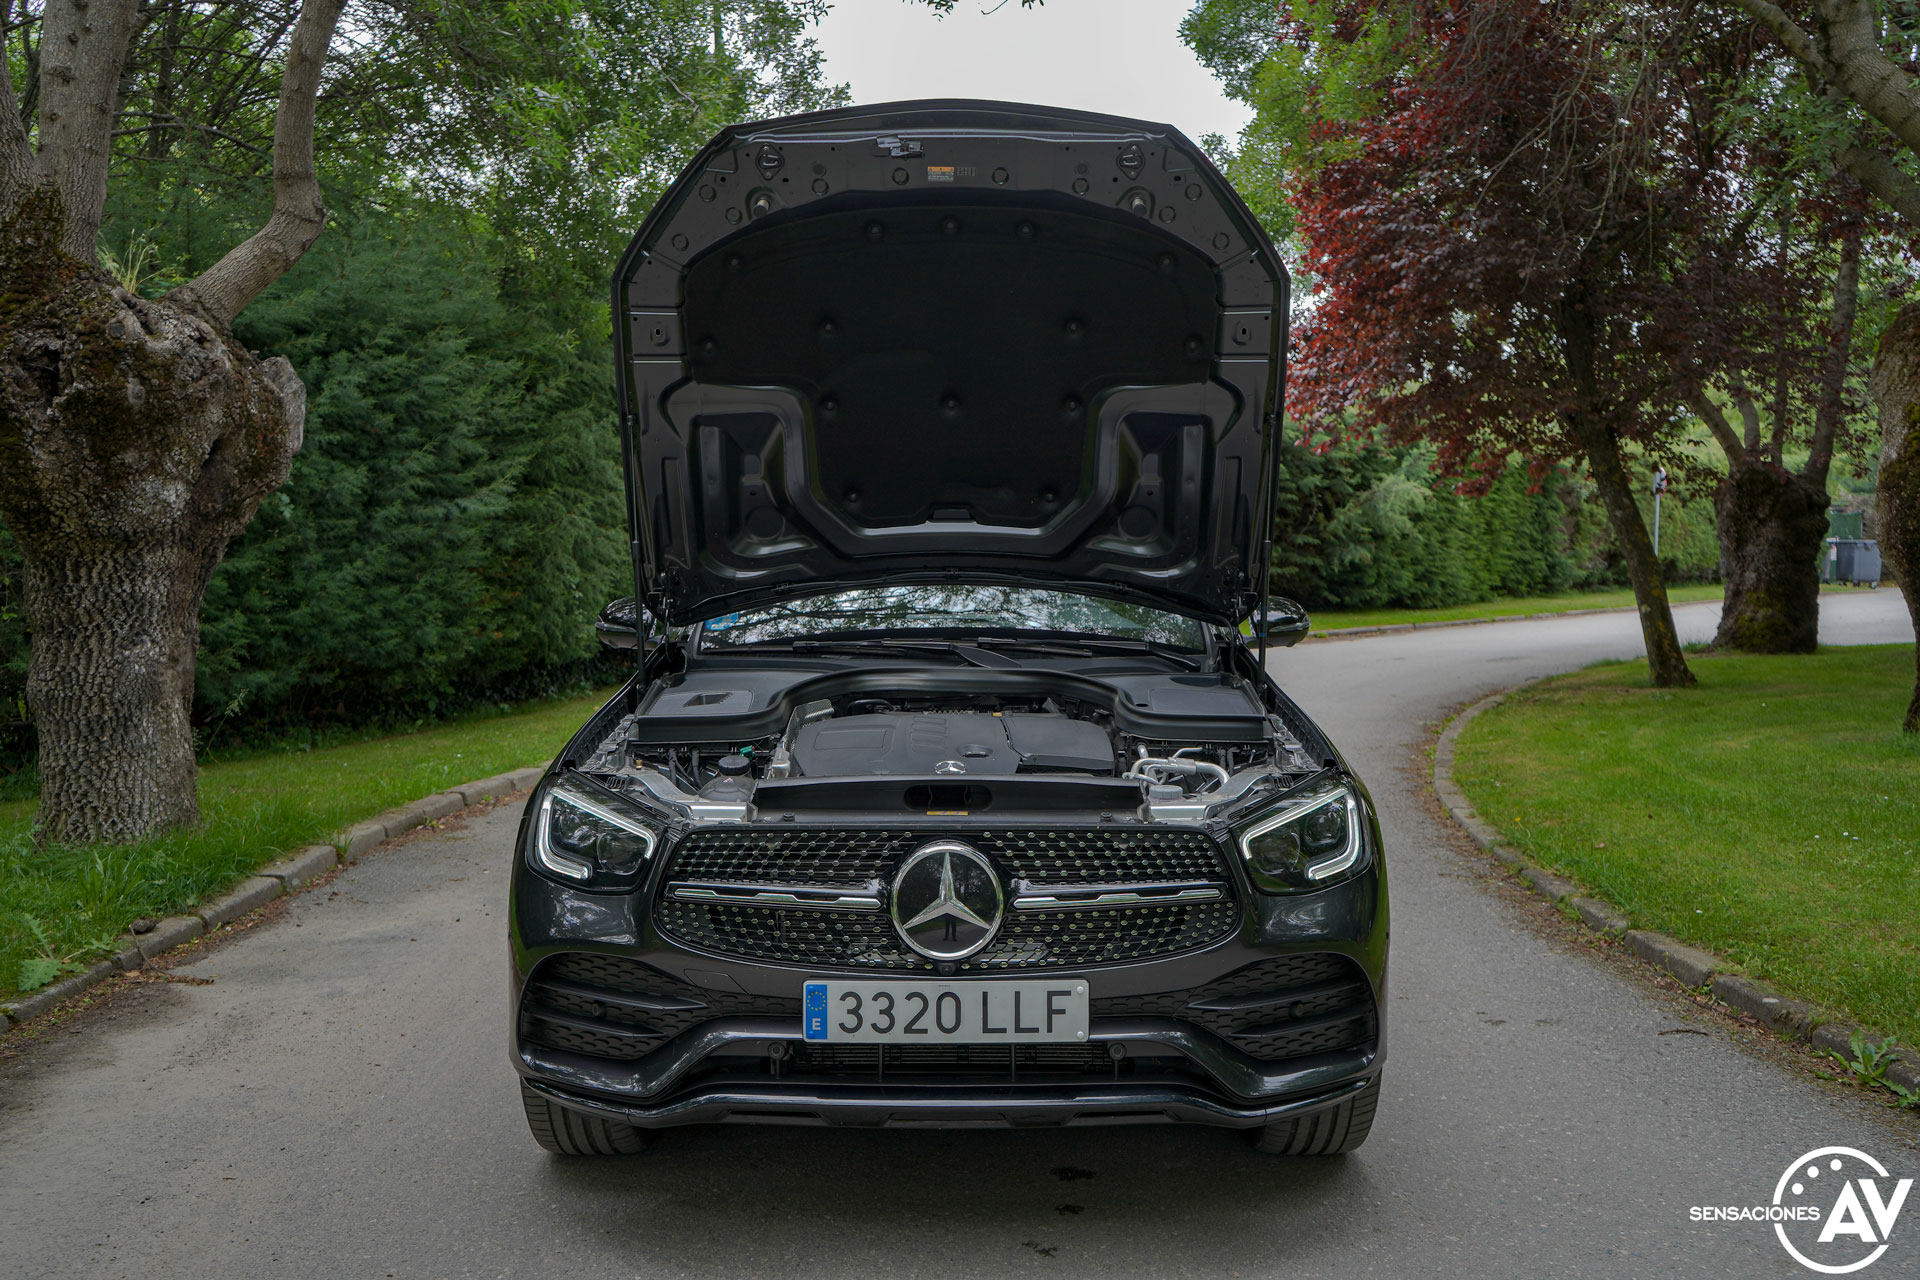 Capo abierto al maximo Mercedes Benz GLC 300de - Prueba Mercedes-Benz GLC 300de 4Matic: Un SUV familiar, híbrido enchufable y diésel ¿Una buena combinación?